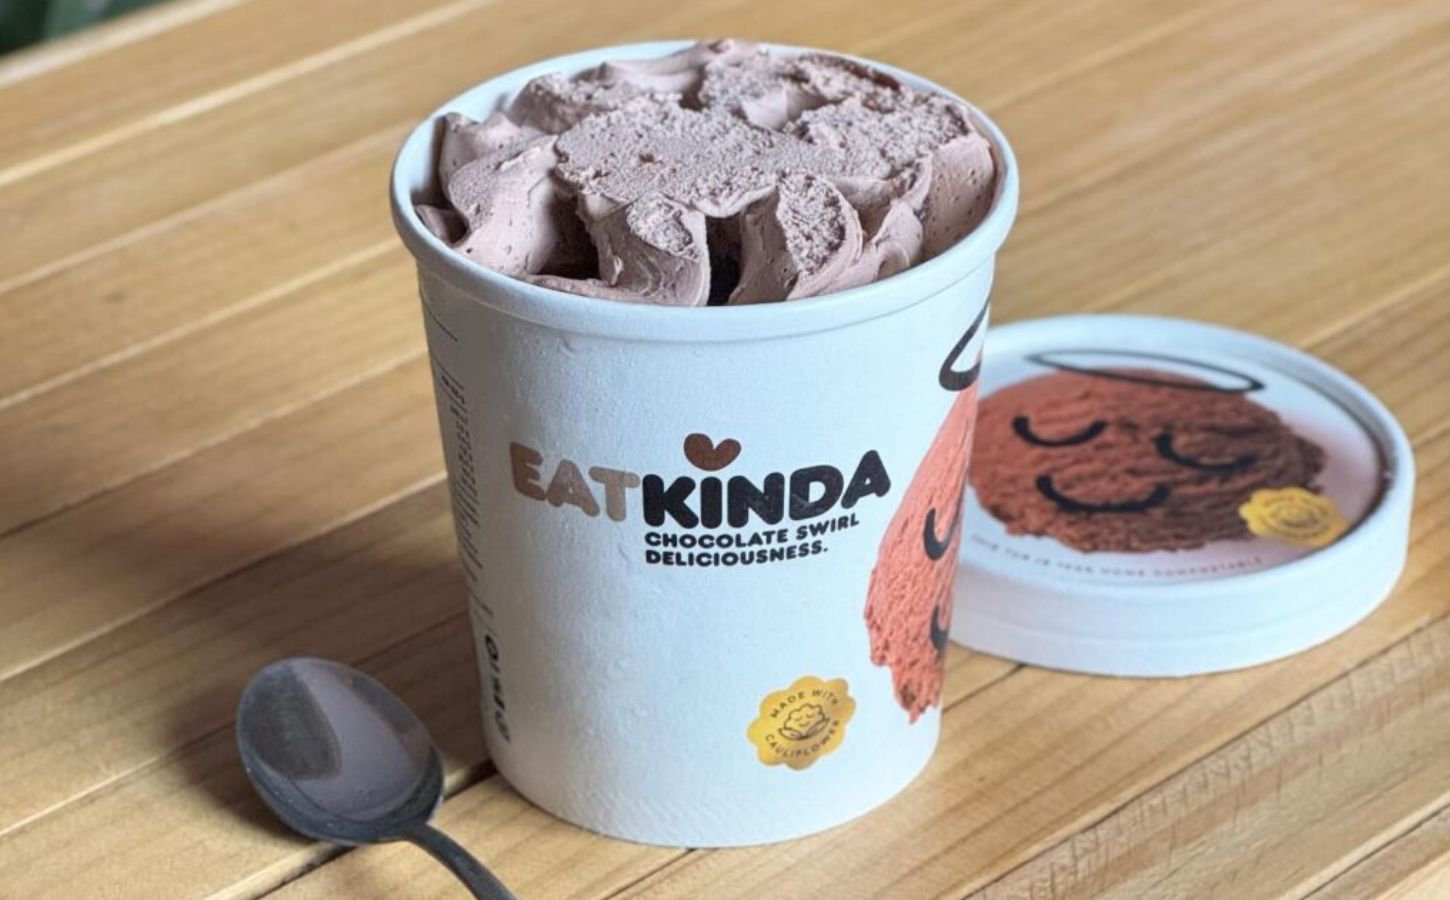 EatKinda ice-cream made from cauliflower